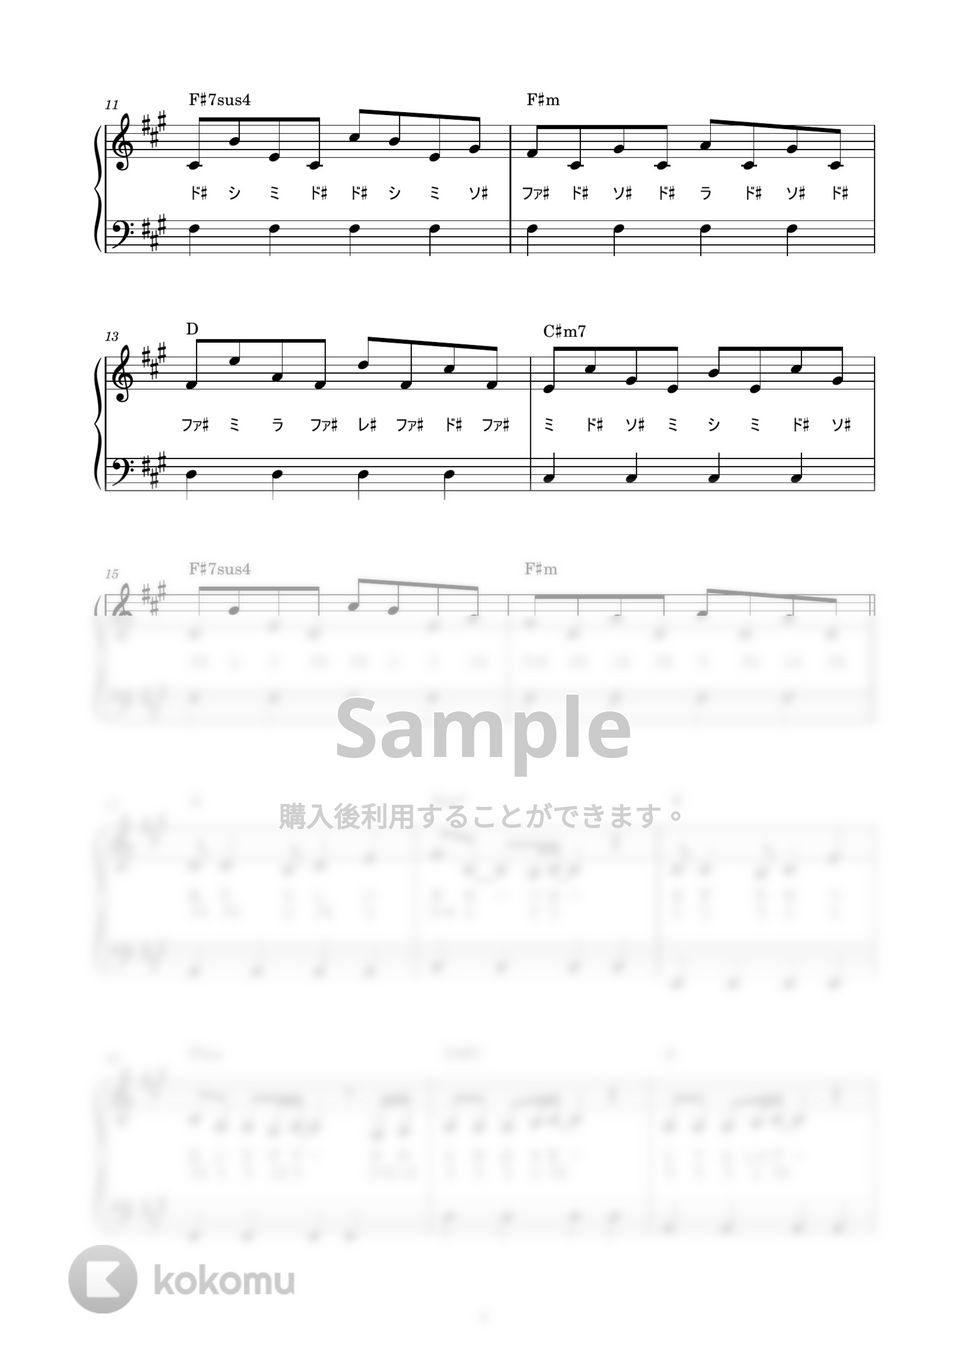 スピッツ - ロビンソン (かんたん / 歌詞付き / ドレミ付き / 初心者) by piano.tokyo